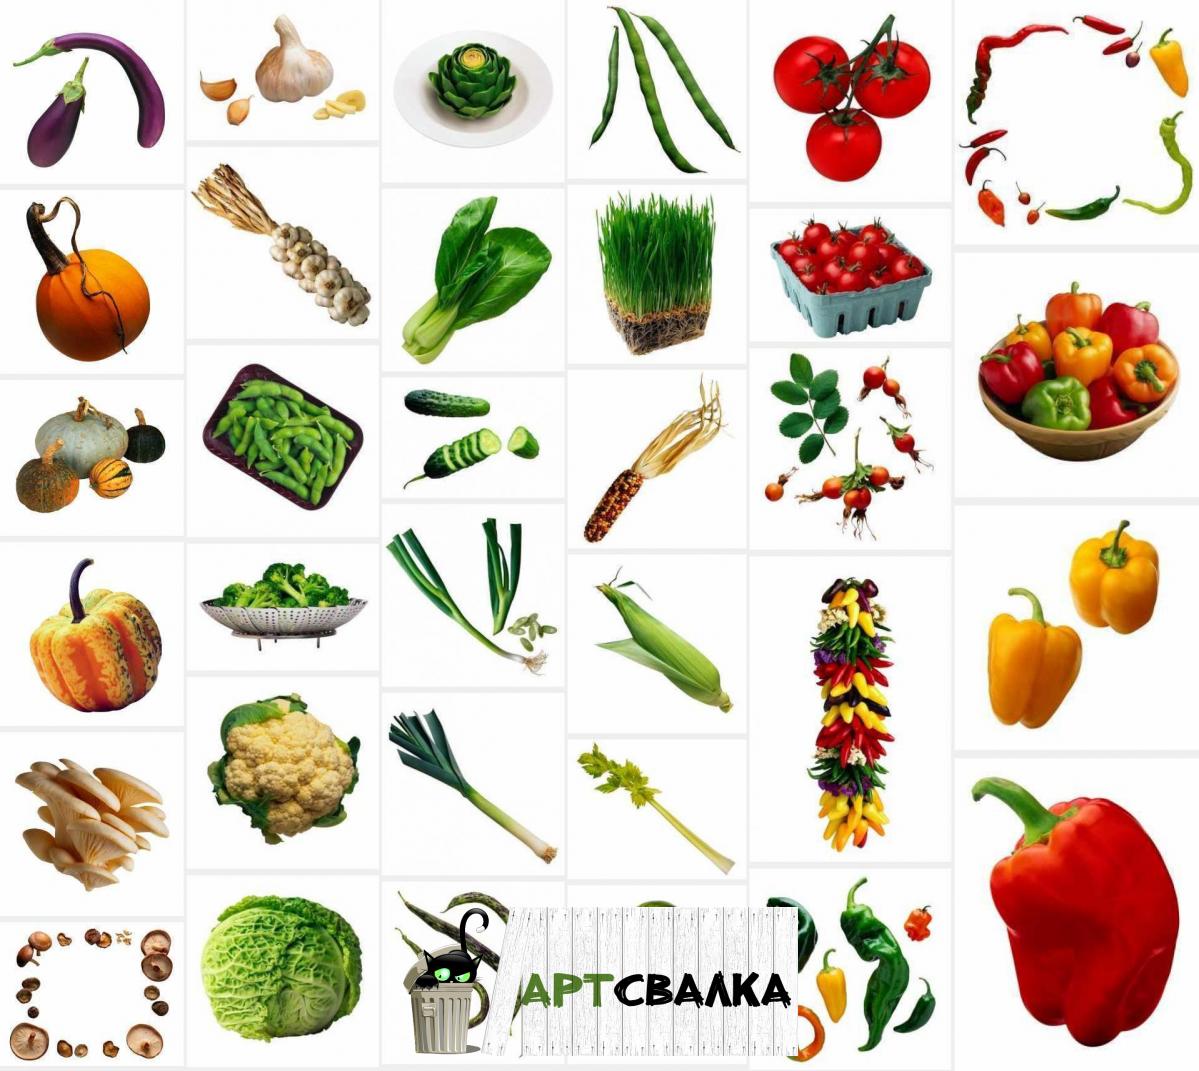 Зелень и овощи на белом фоне | Herbs and vegetables on white background